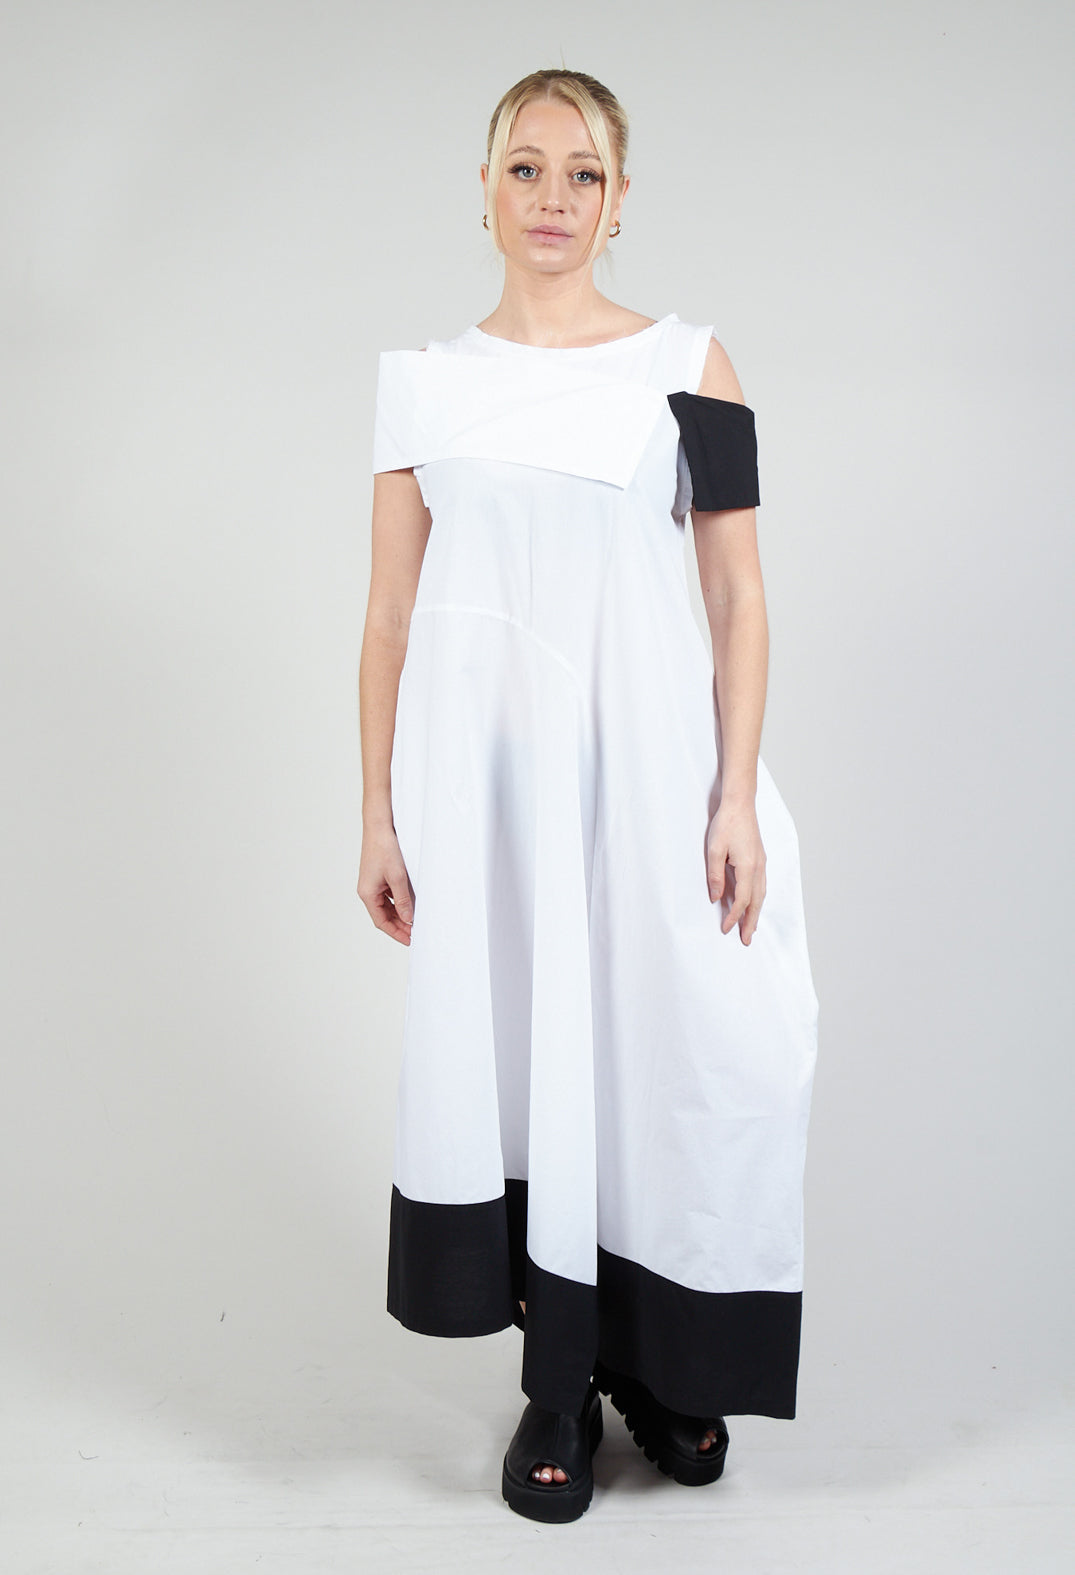 ELAN1 Dress in White with Black